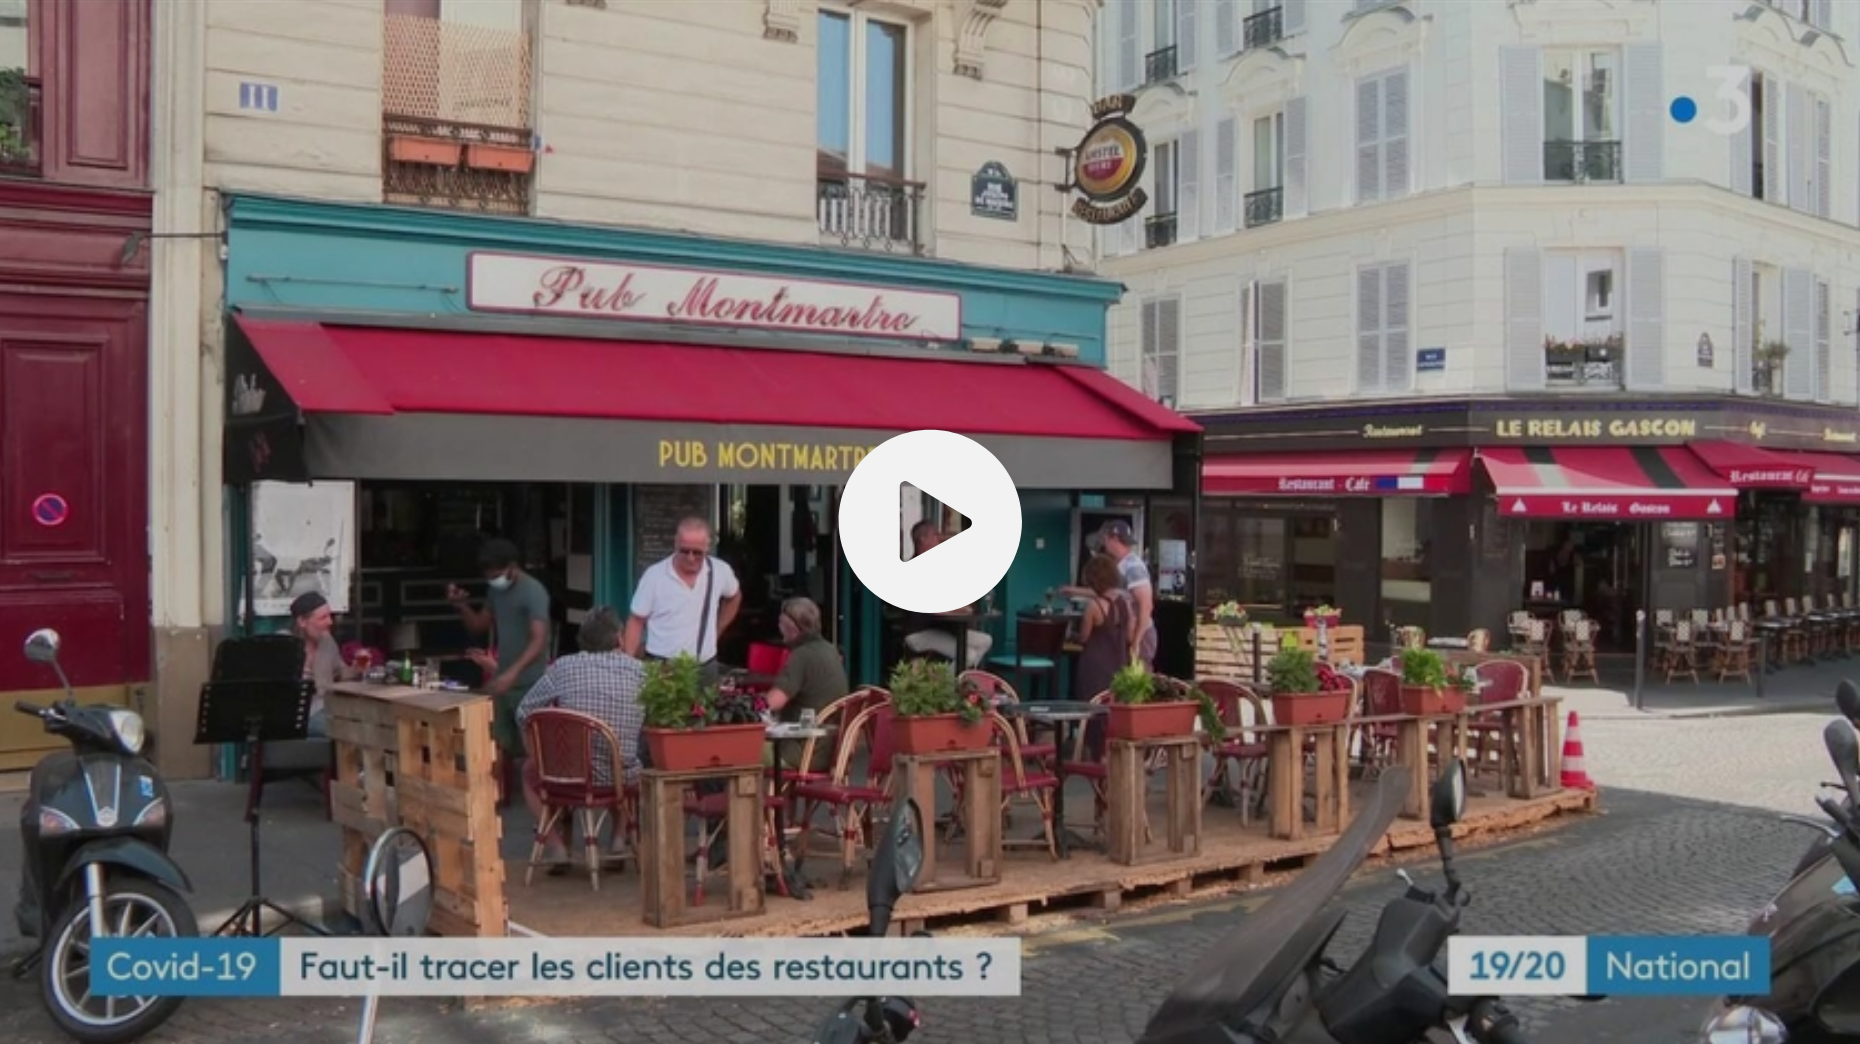 La mairie de Paris envisage de tracer les clients des restaurants